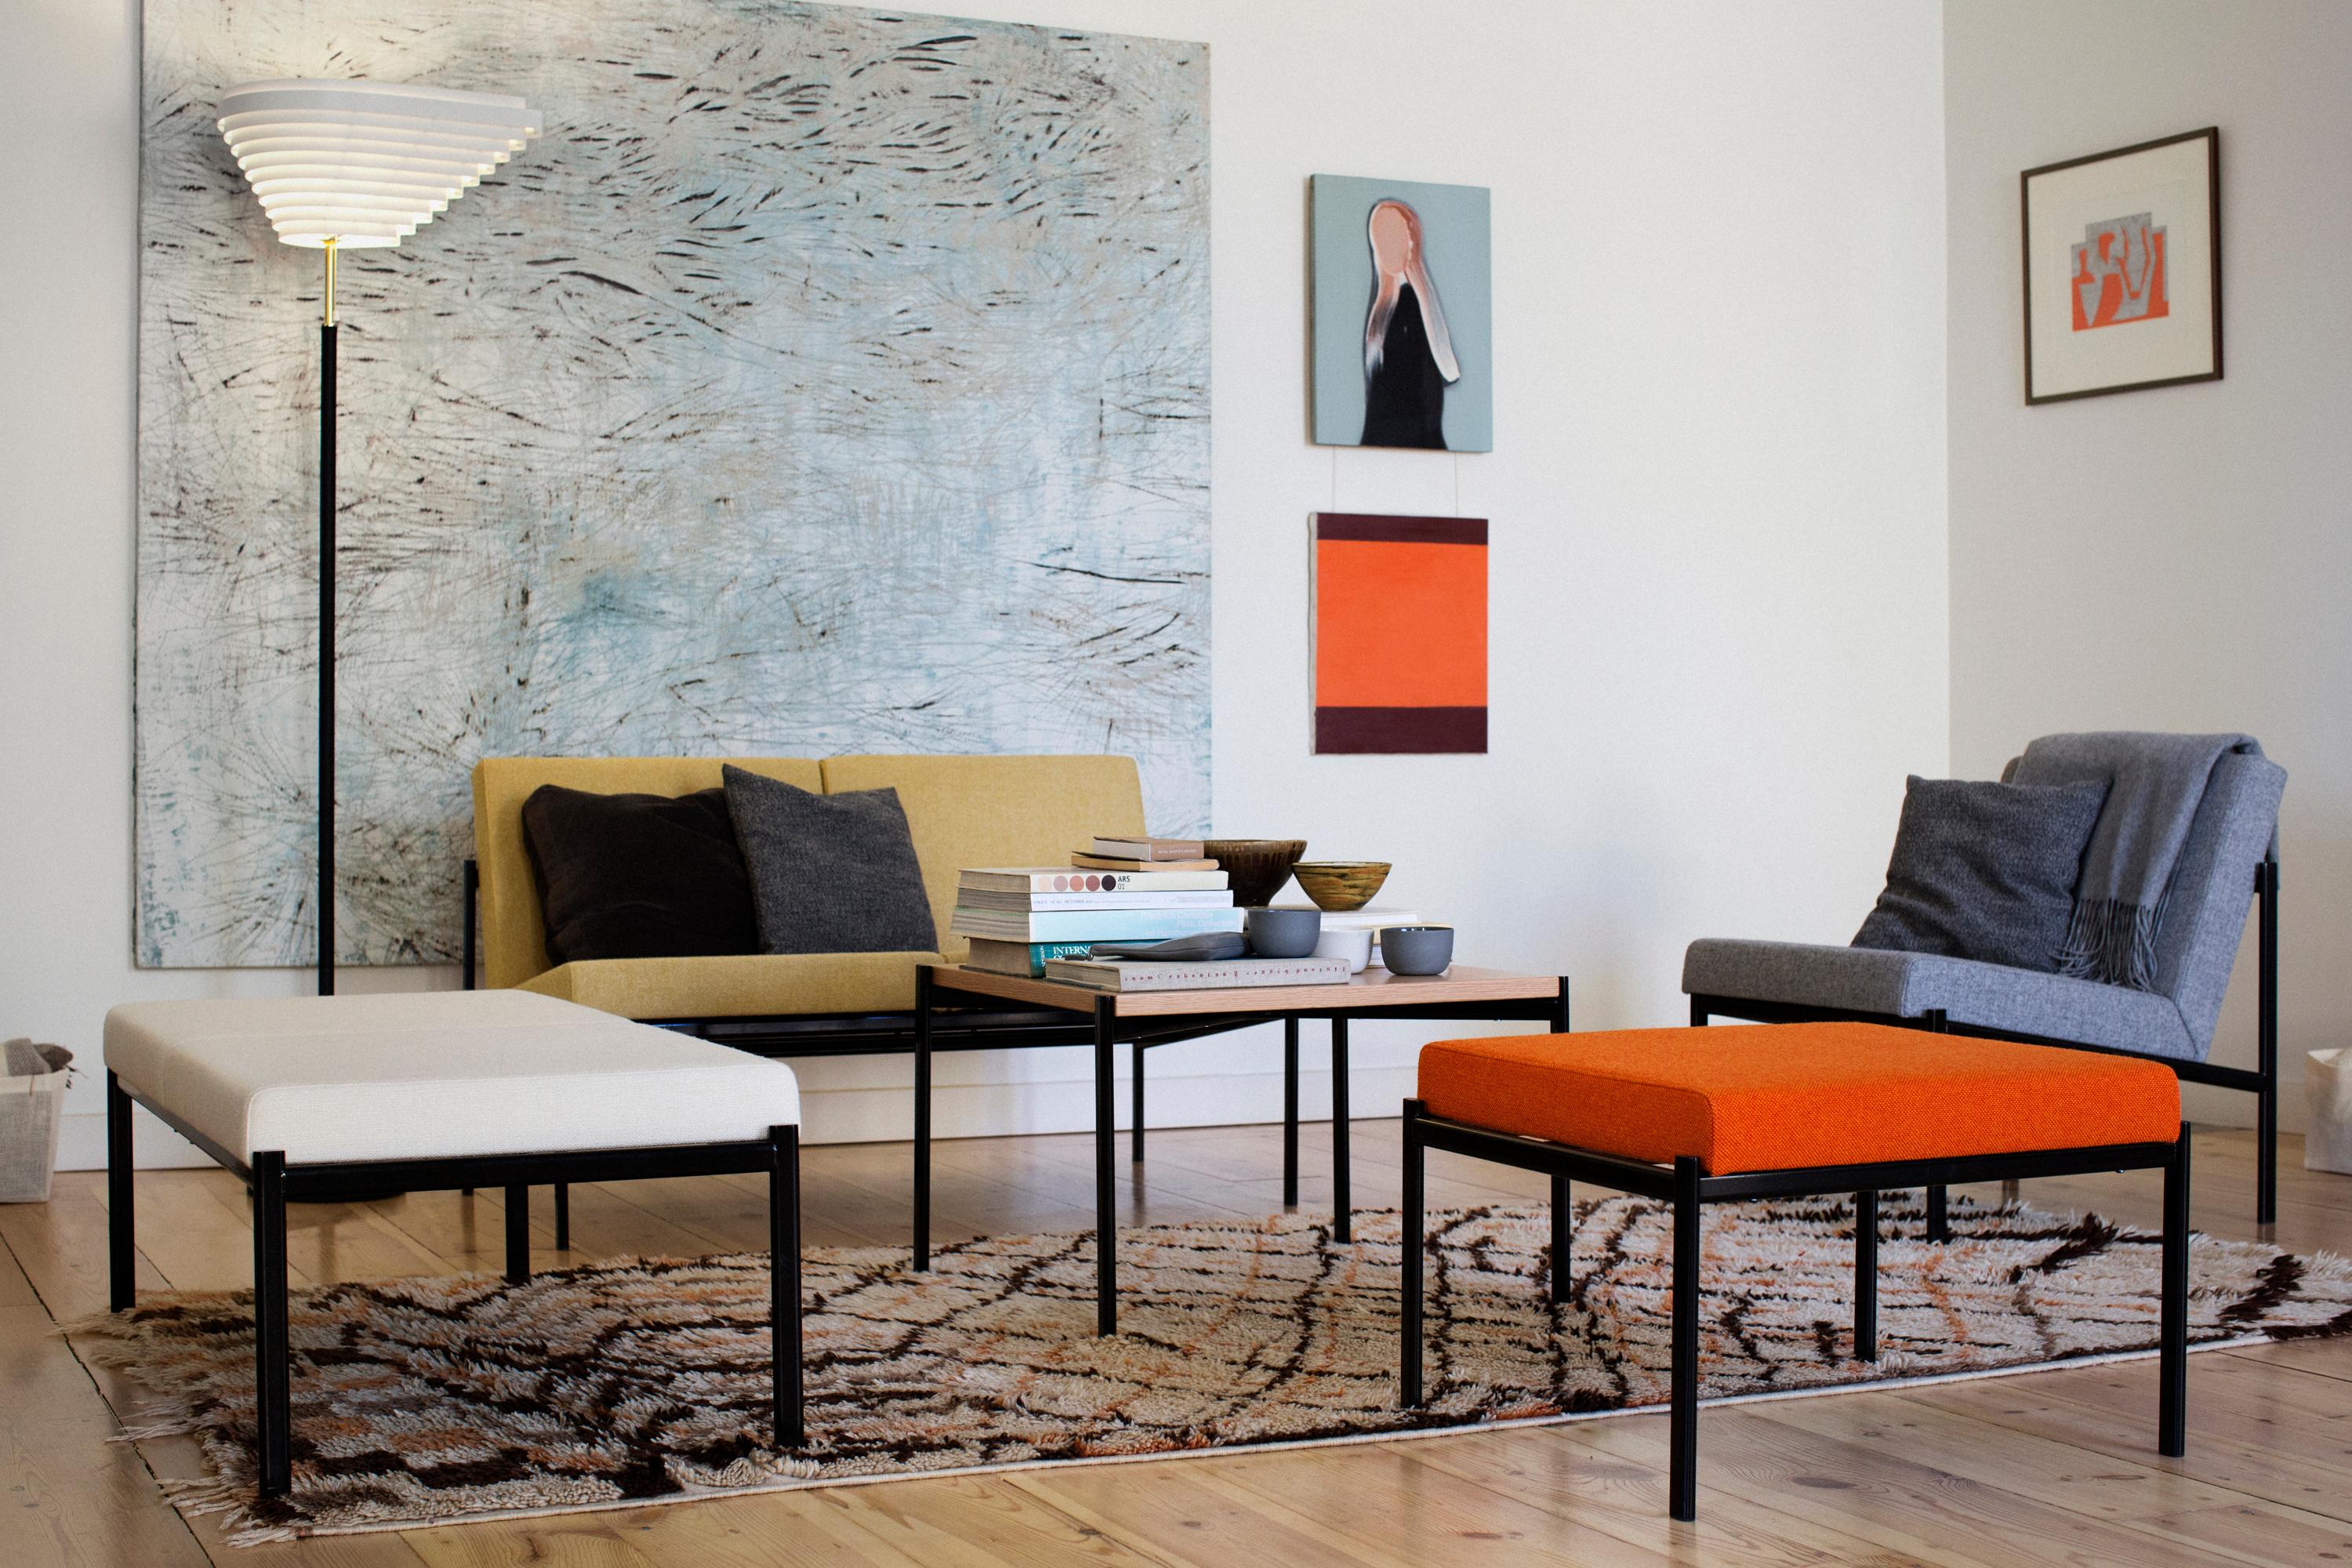 Bunte Polstermöbel #couchtisch #sessel #sofa #wohnzimmergestaltung ©Artek